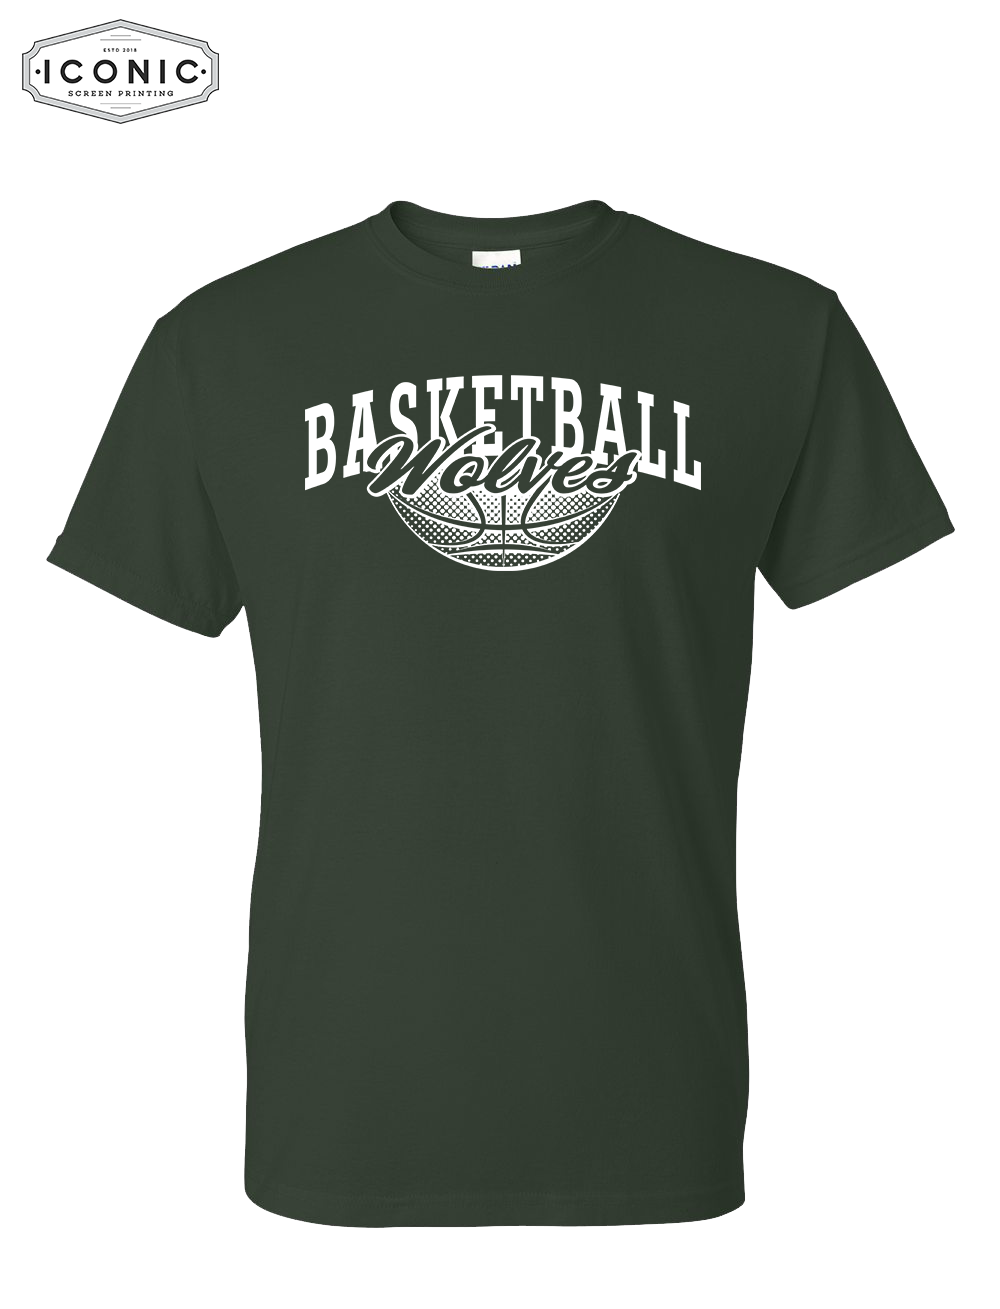 IKM Wolves Basketball - DryBlend T-shirt